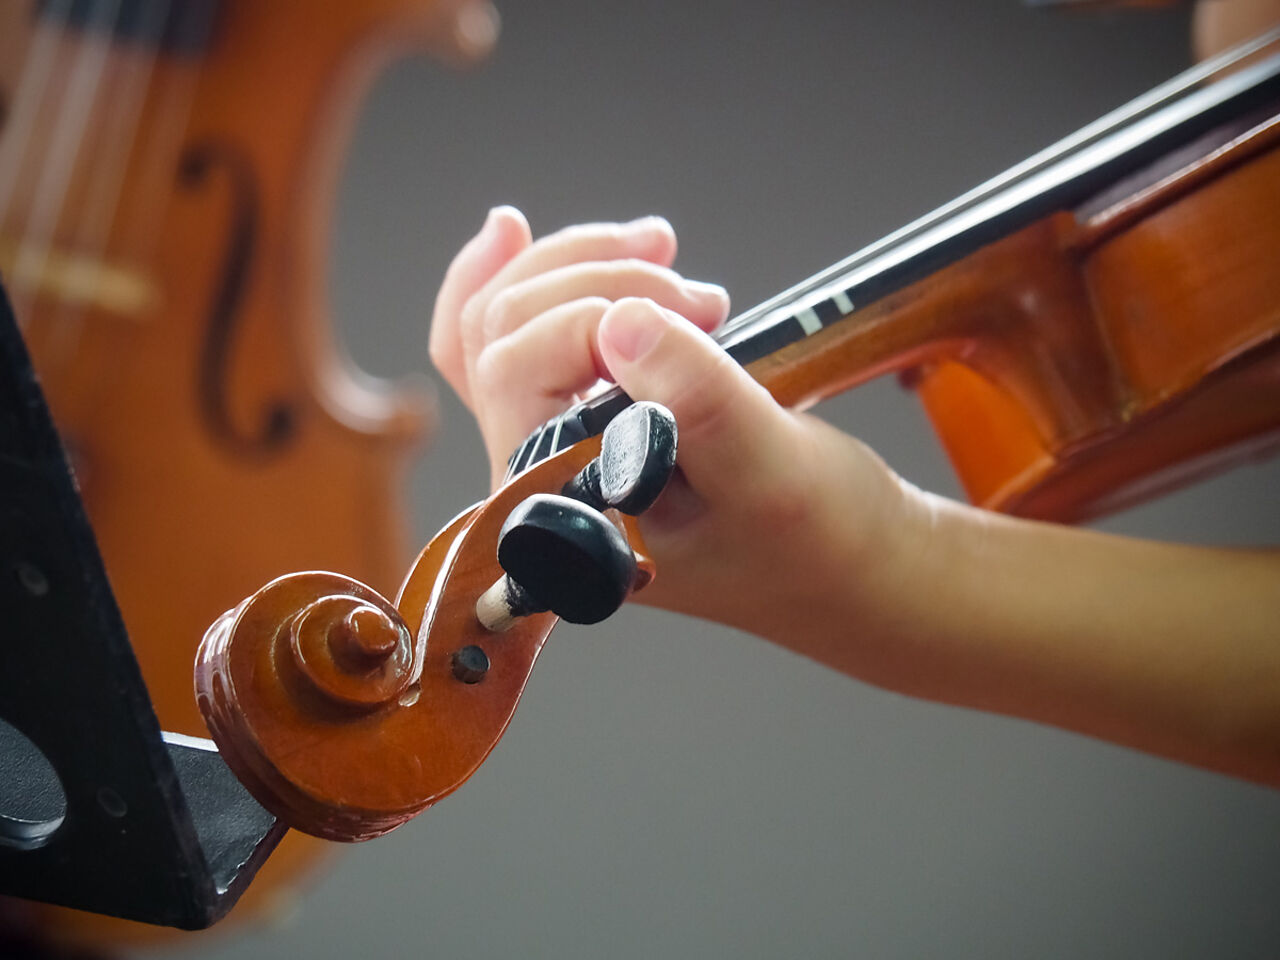 バイオリンをもっている手のアップ画像